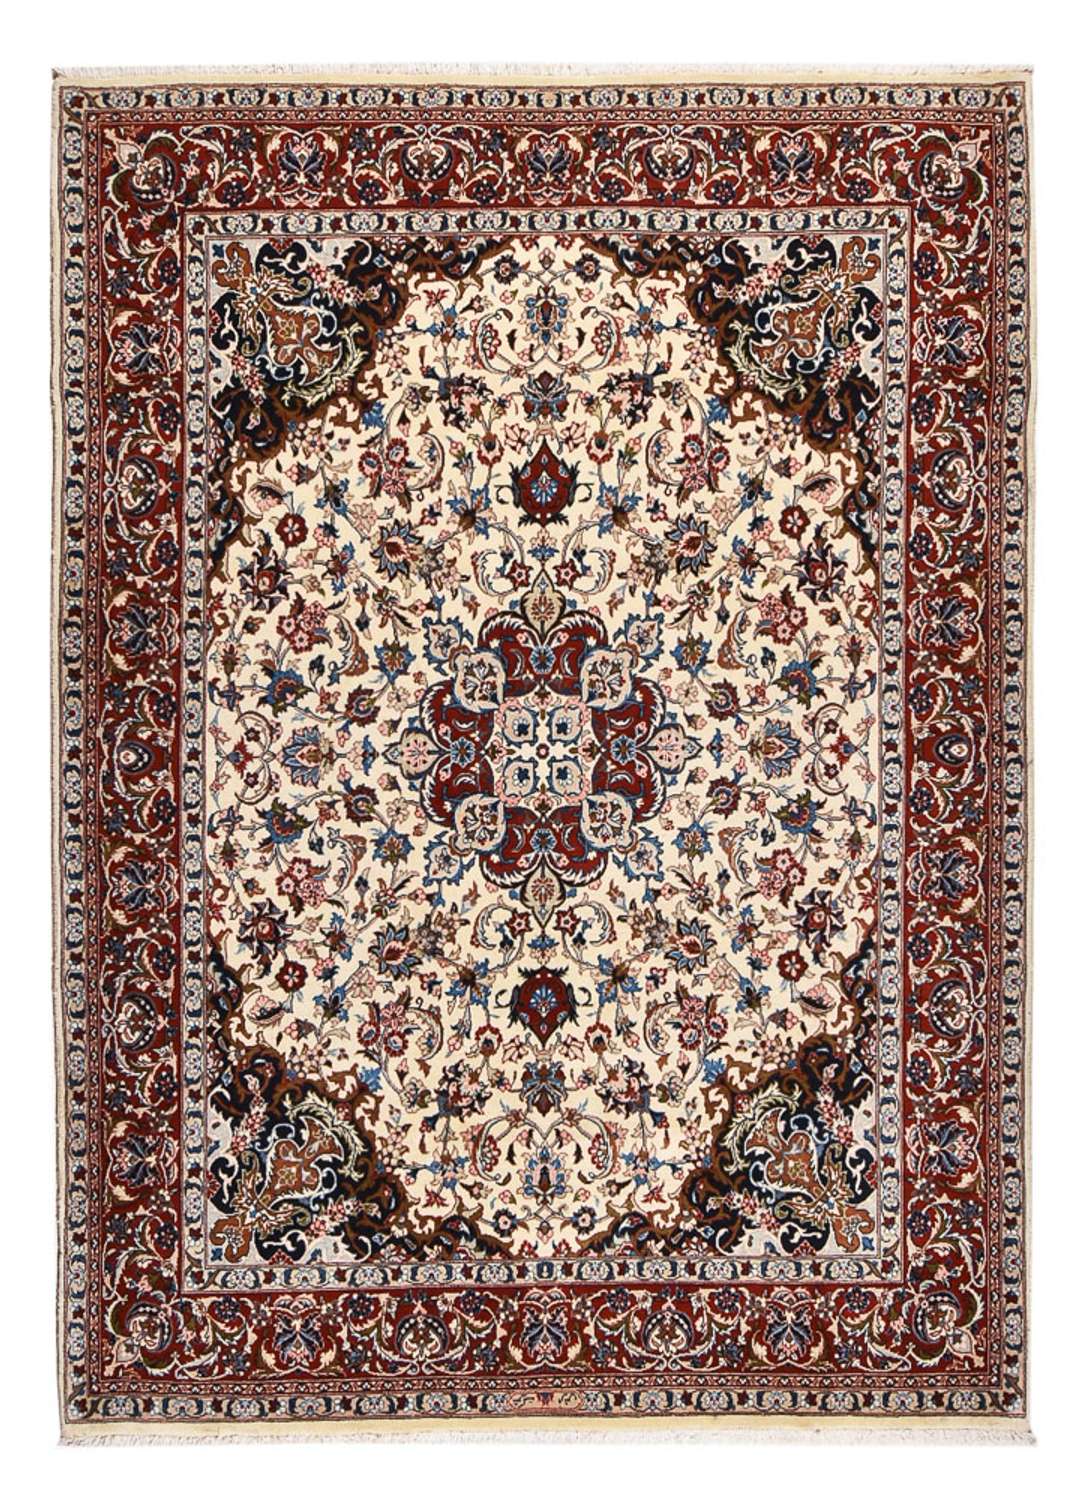 Dywan perski - Klasyczny - 274 x 202 cm - beżowy